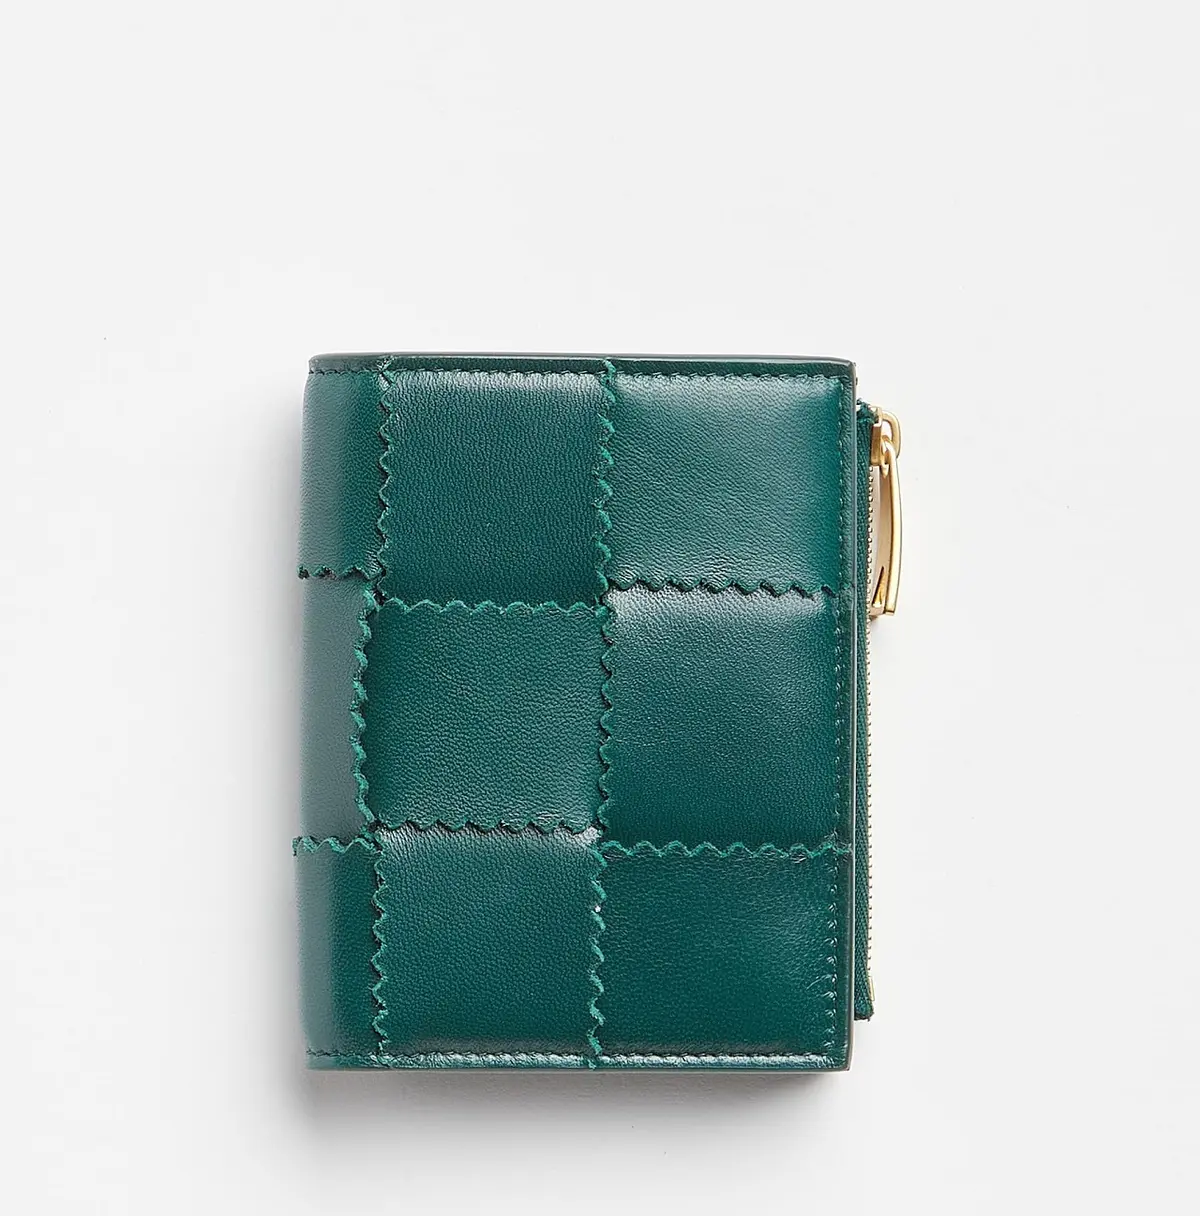 イタリア ボッテガベネタ 2つ折り財布 コインケース付き[カーフ] 限定デザイン